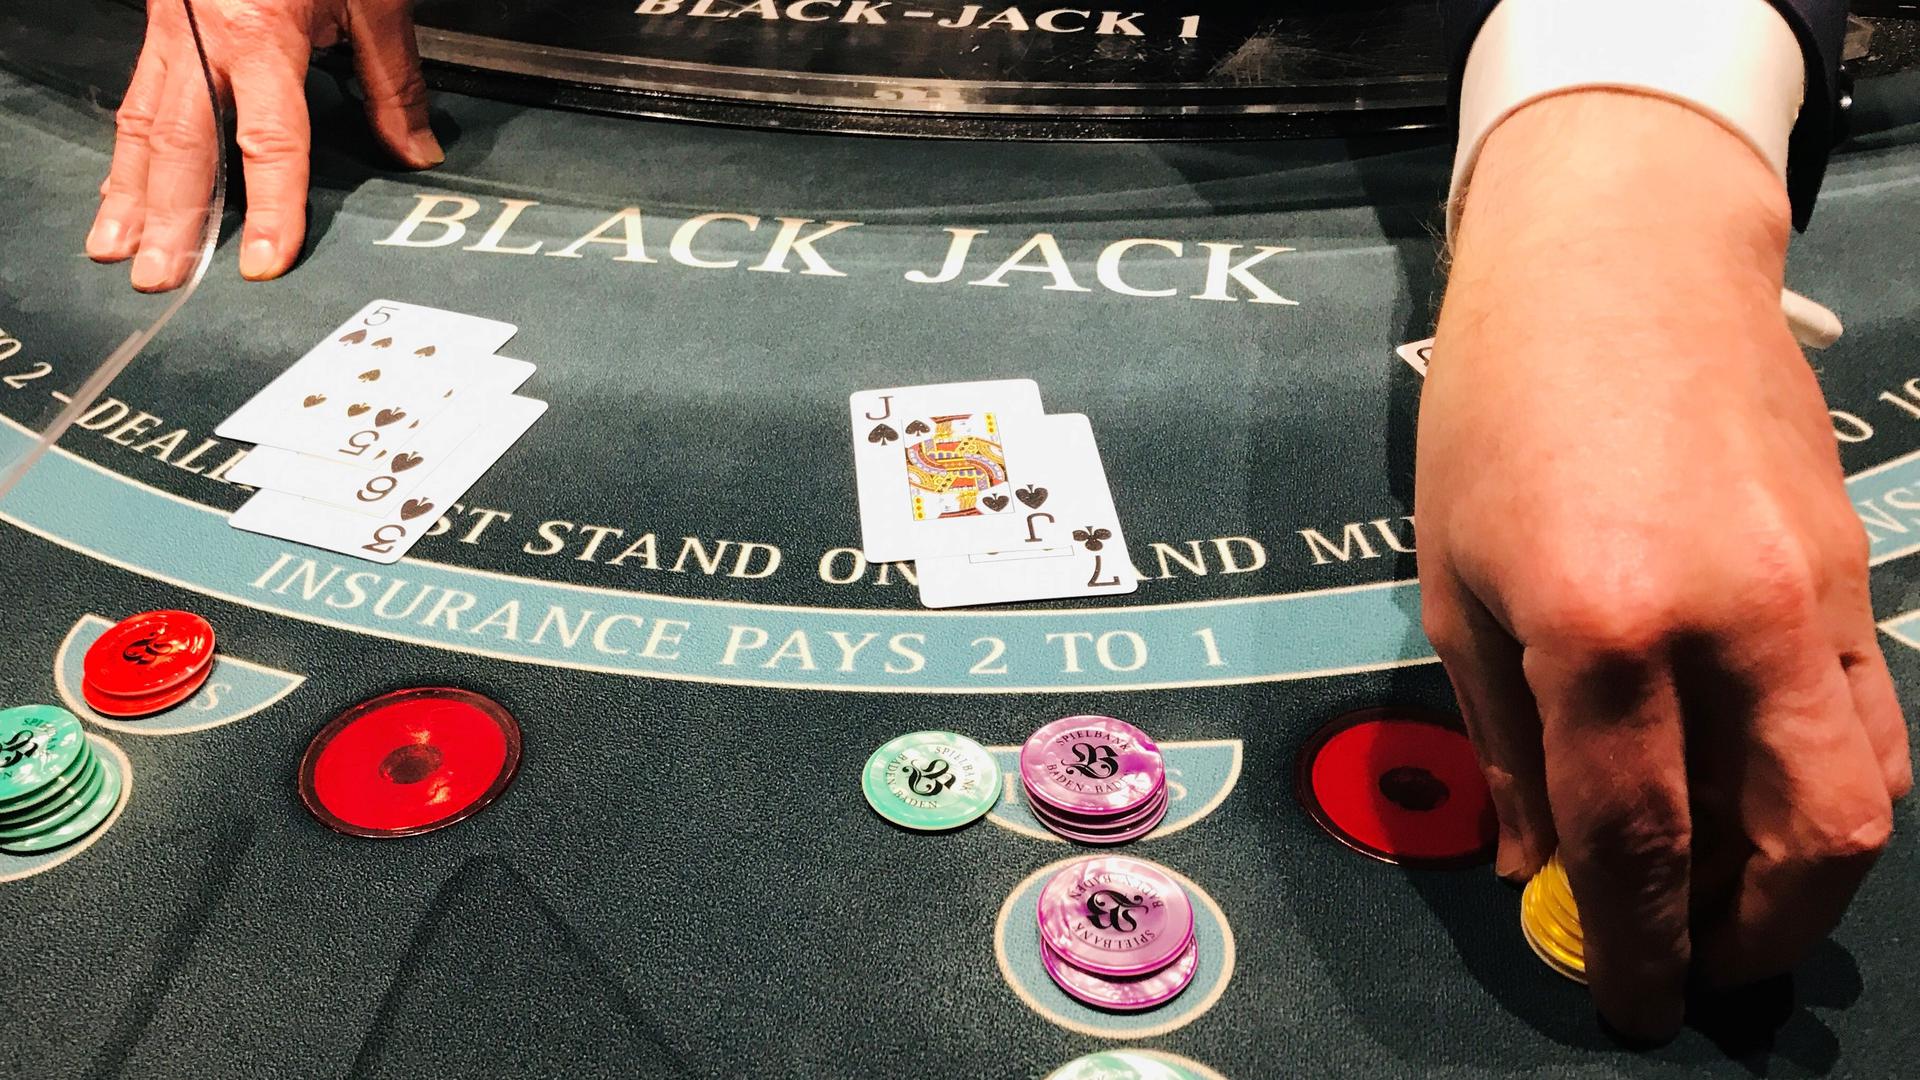 Die Spielbank im Kurhaus Baden-Baden lockt wieder mit Black Jack. Auch an den Roulette-Tischen rollt wieder die Kugel.